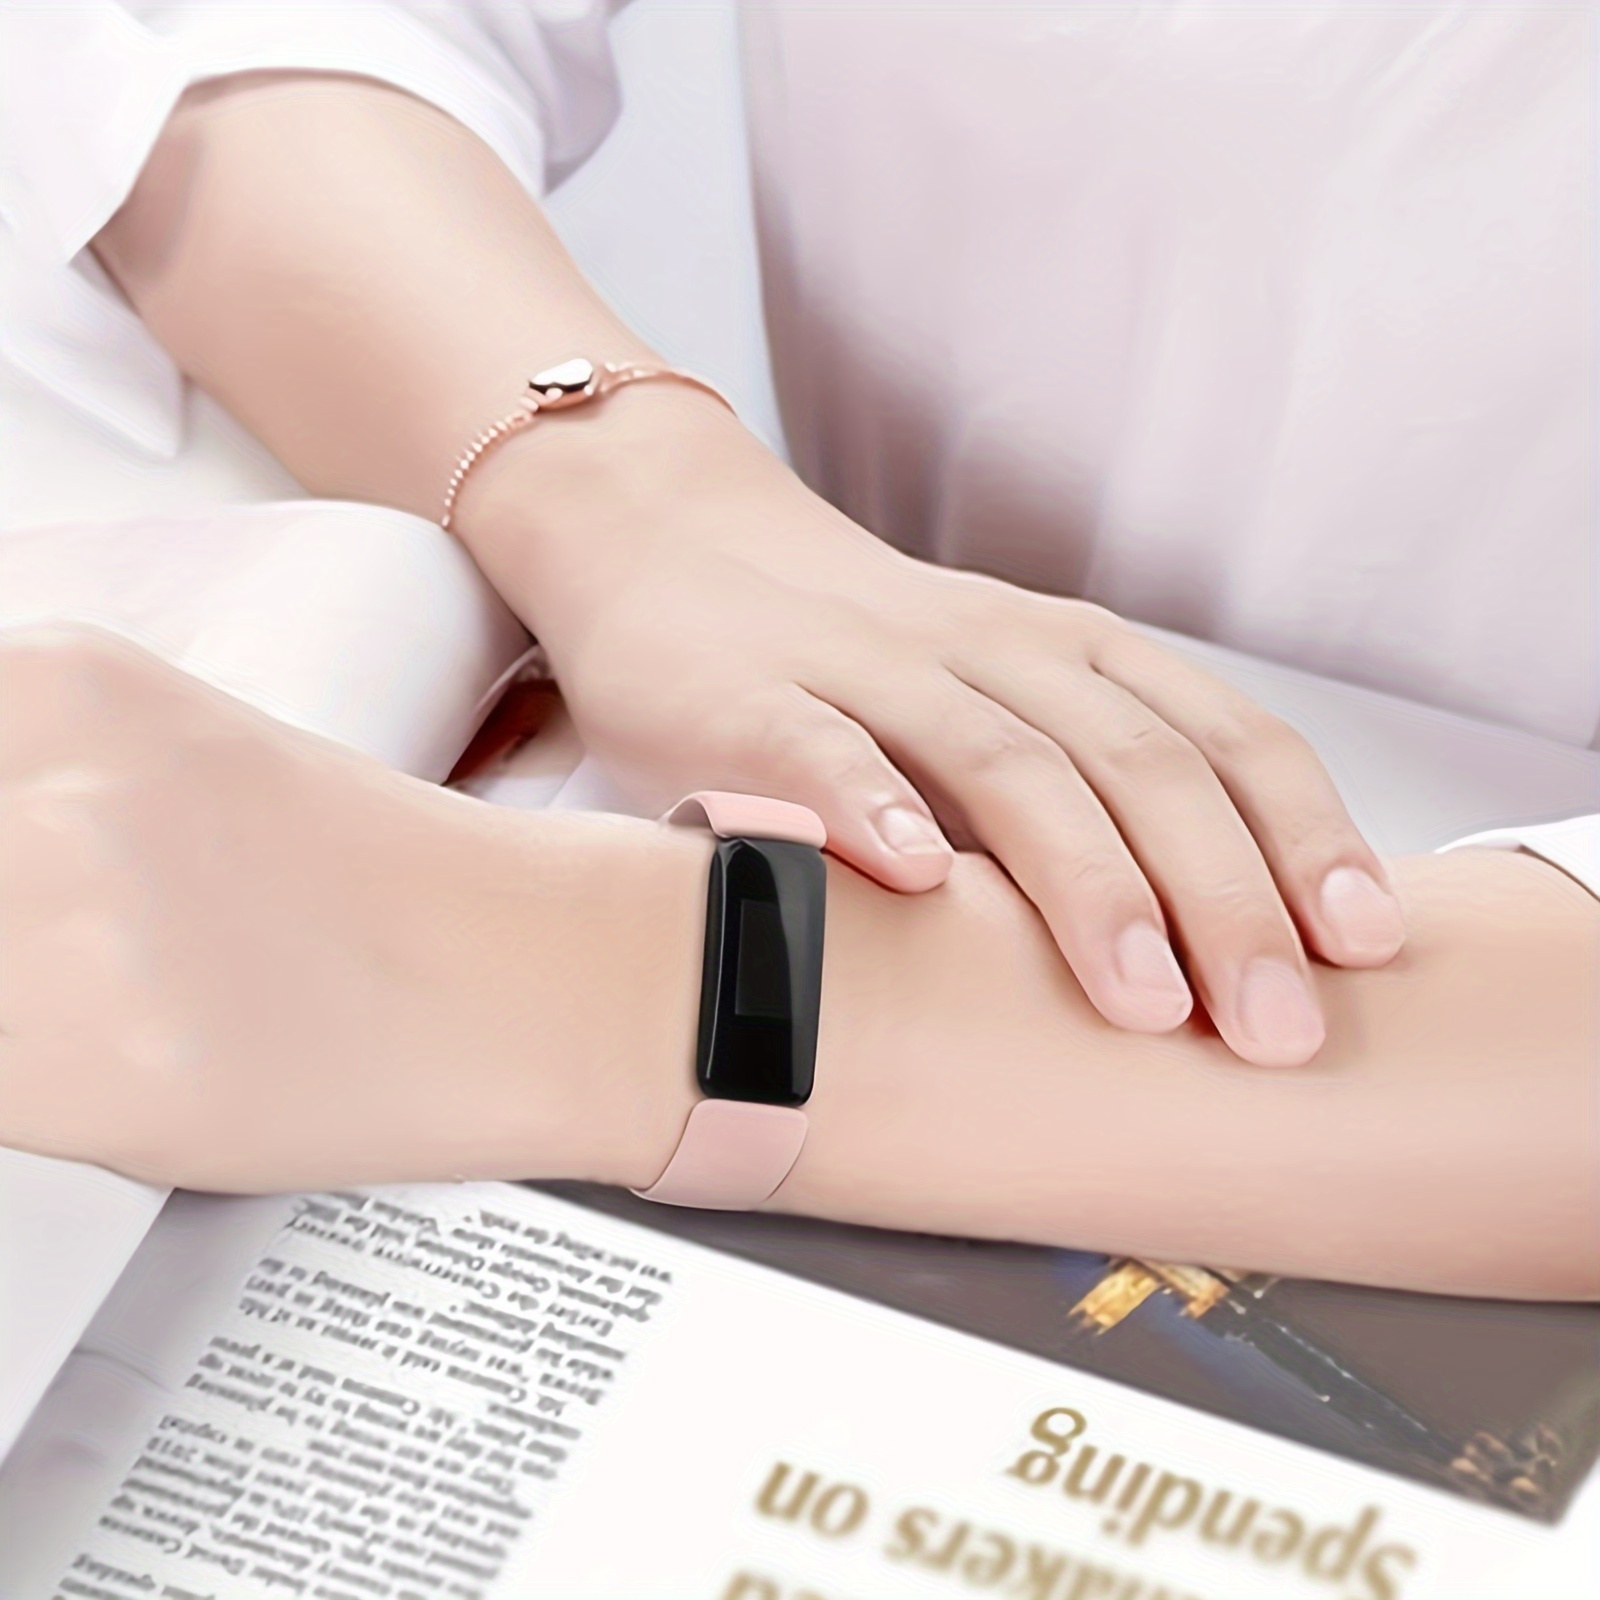 Pour Fitbit Luxe/édition spéciale bracelet en acier inoxydable bracelet de  montre-bracelet, bracelets de remplacement pour bijoux en acier inoxydable